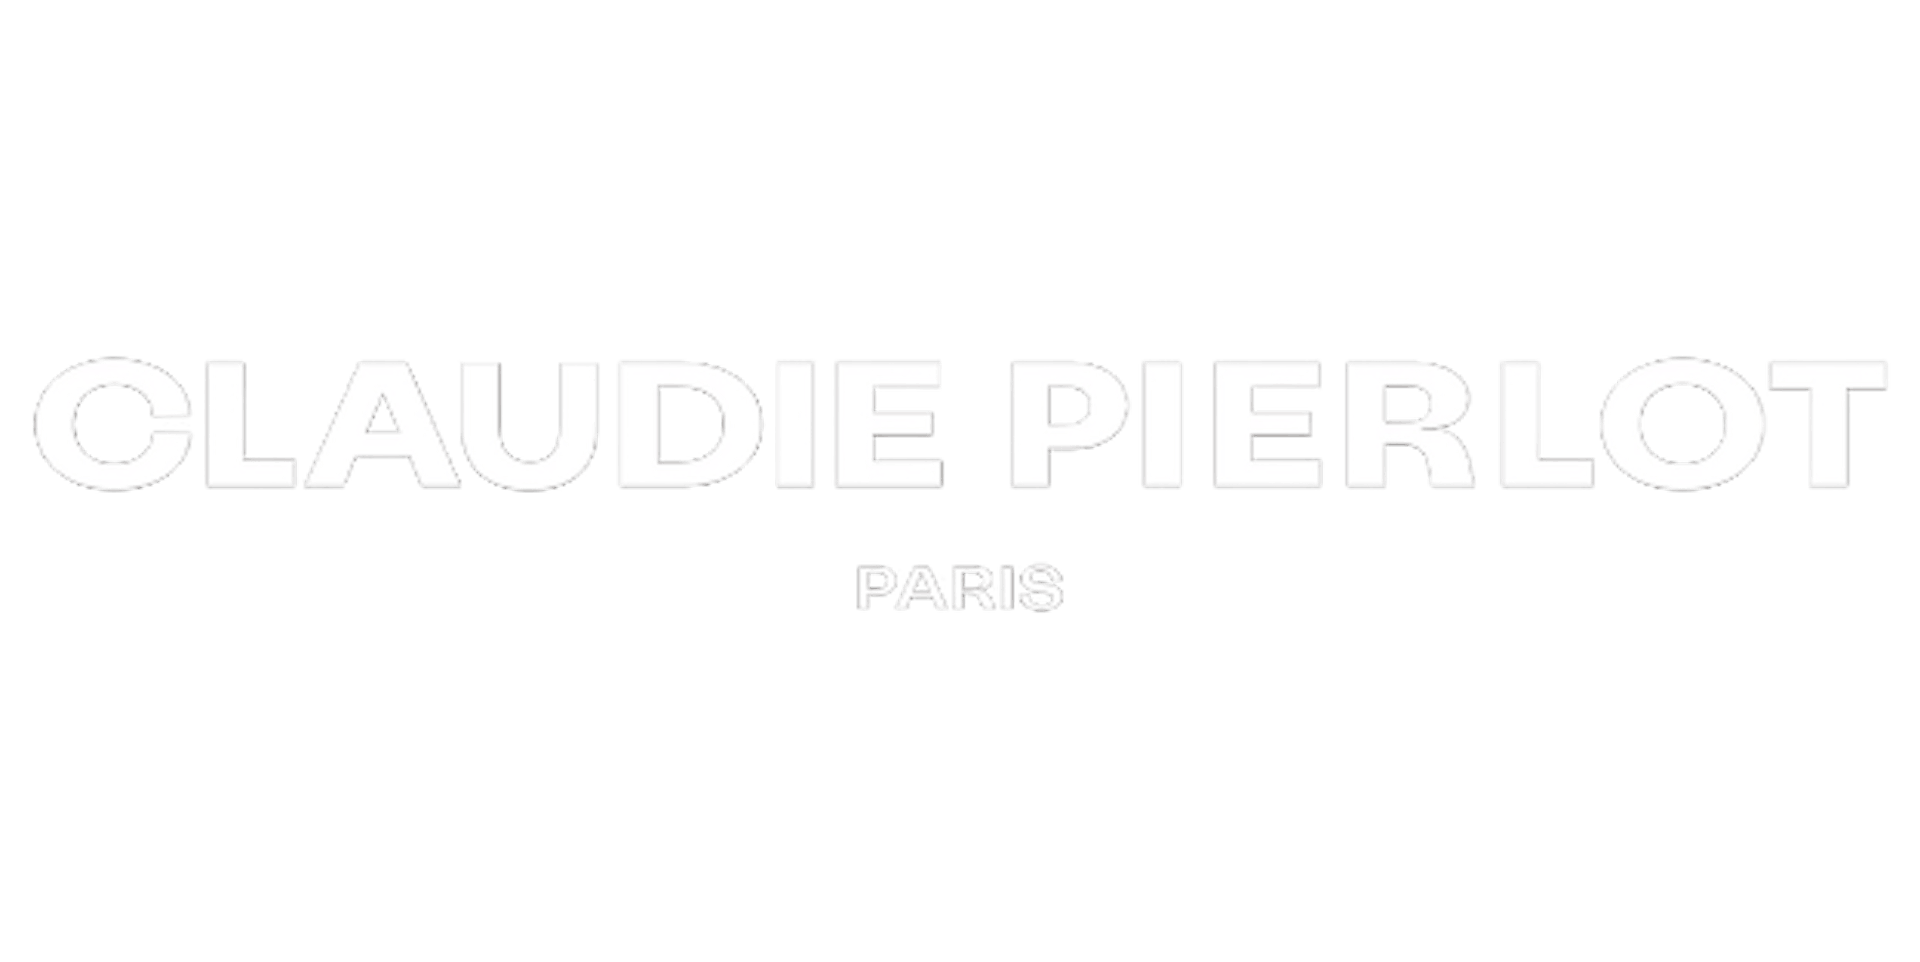 Claudie Pierlot logo